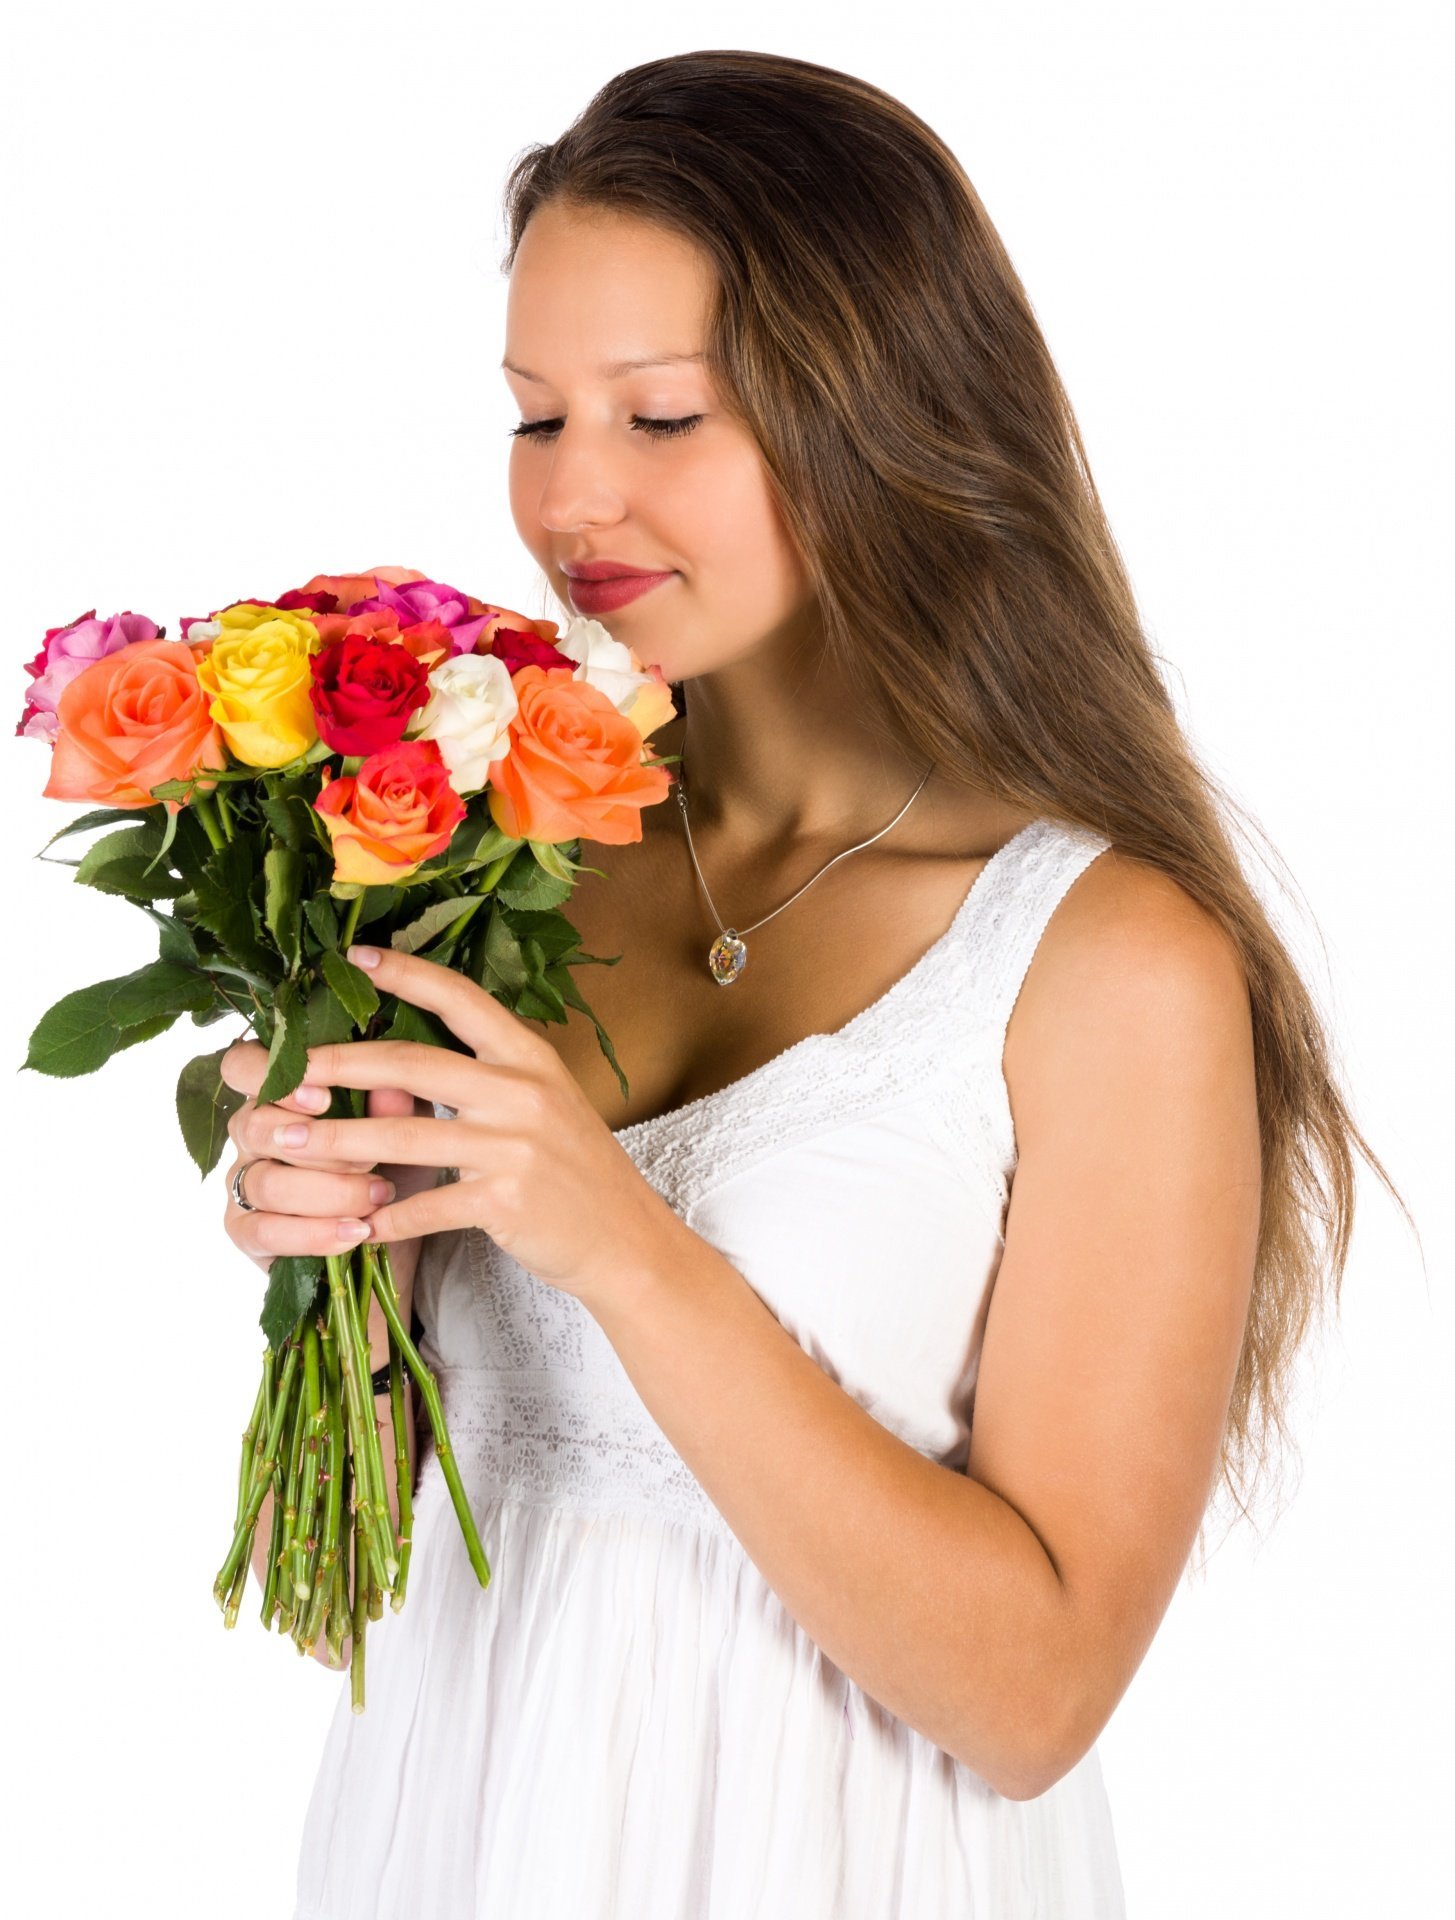 Трек дарите женщинам цветы. Букет "девушке". Букет цветов для женщины. Девушка с цветами. Букет в руках у женщины.